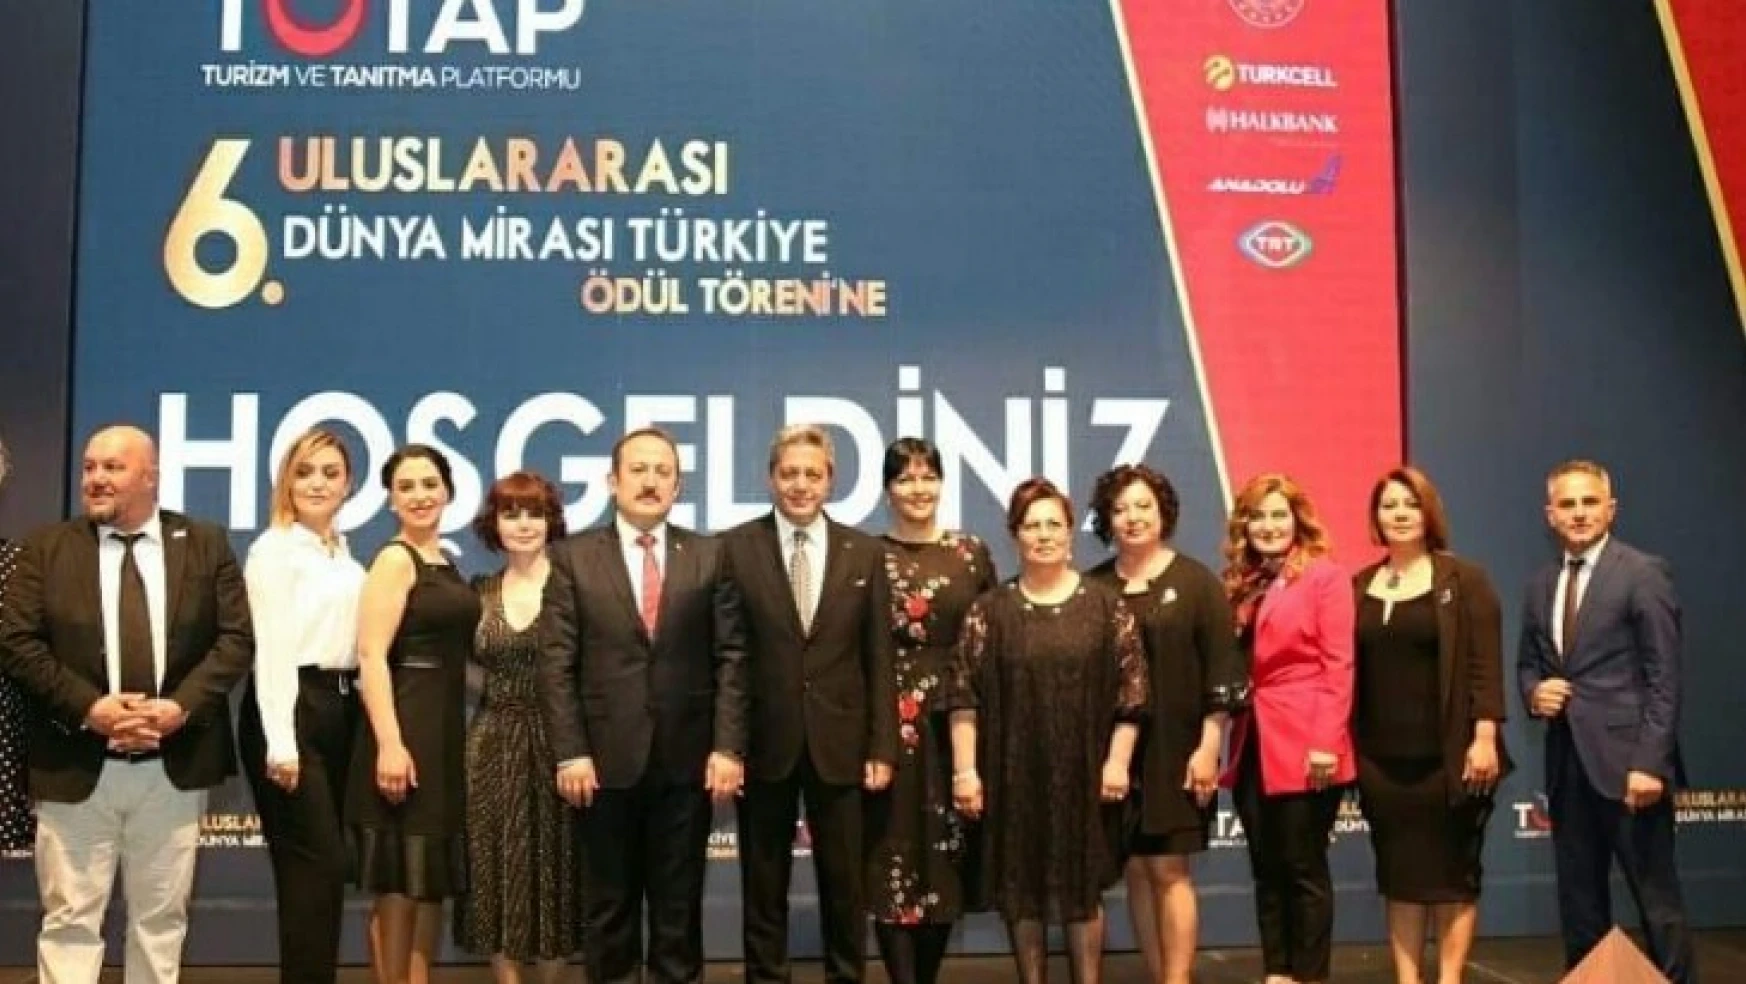 'Türkiye'nin saygınlığı turizmin yaygınlığı ile artar'